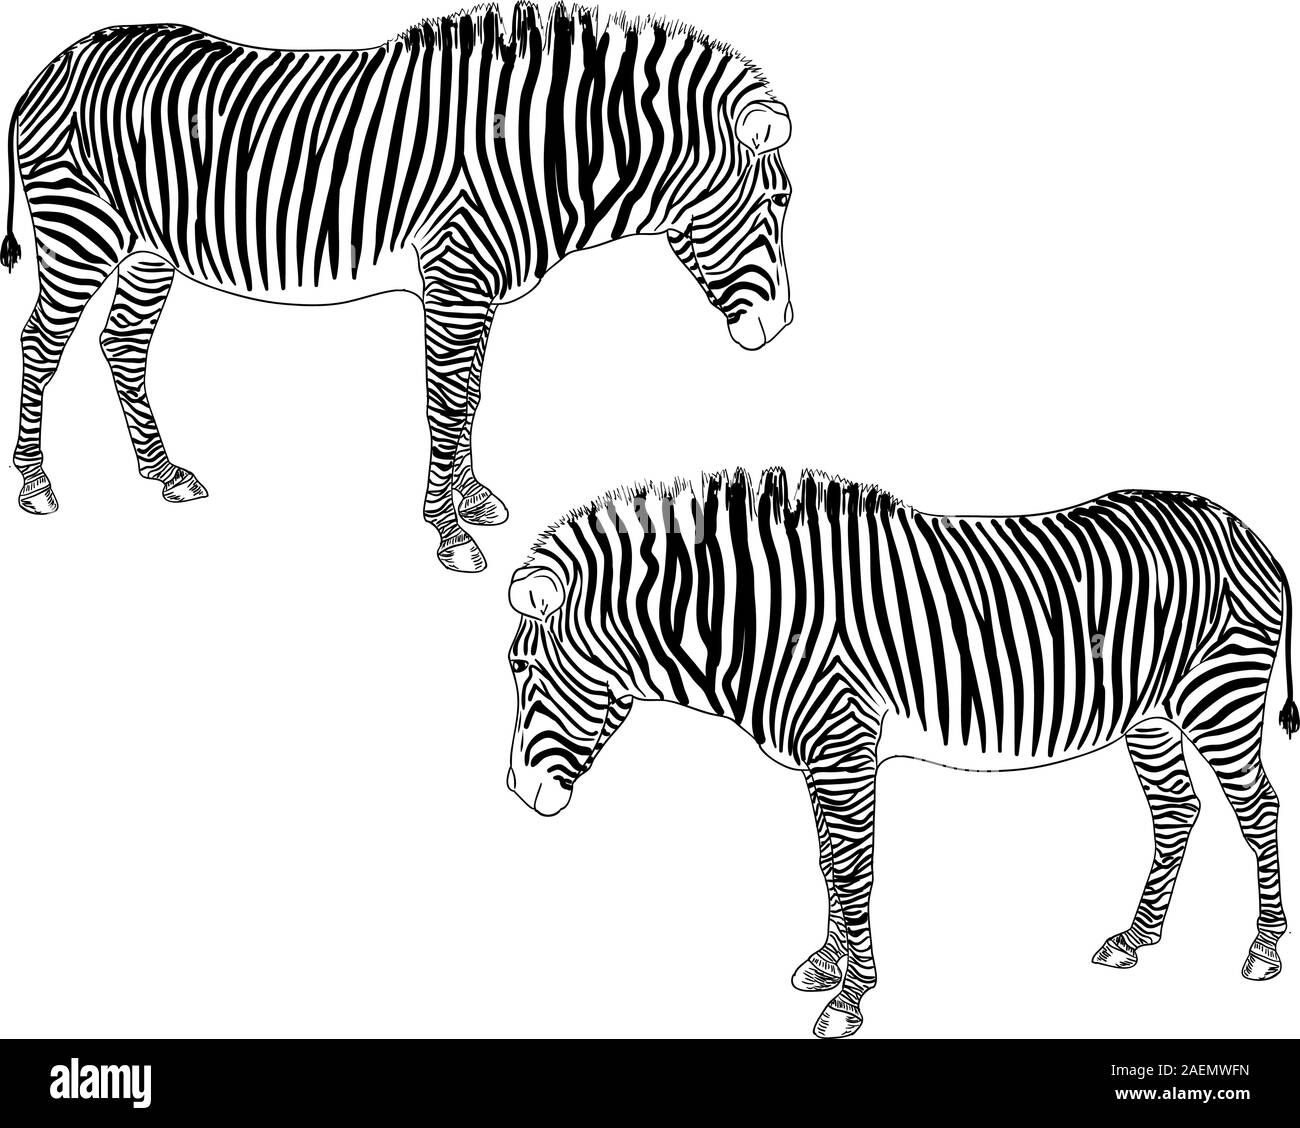 Zwei Zebras. Vektor-Illustration. Stock Vektor